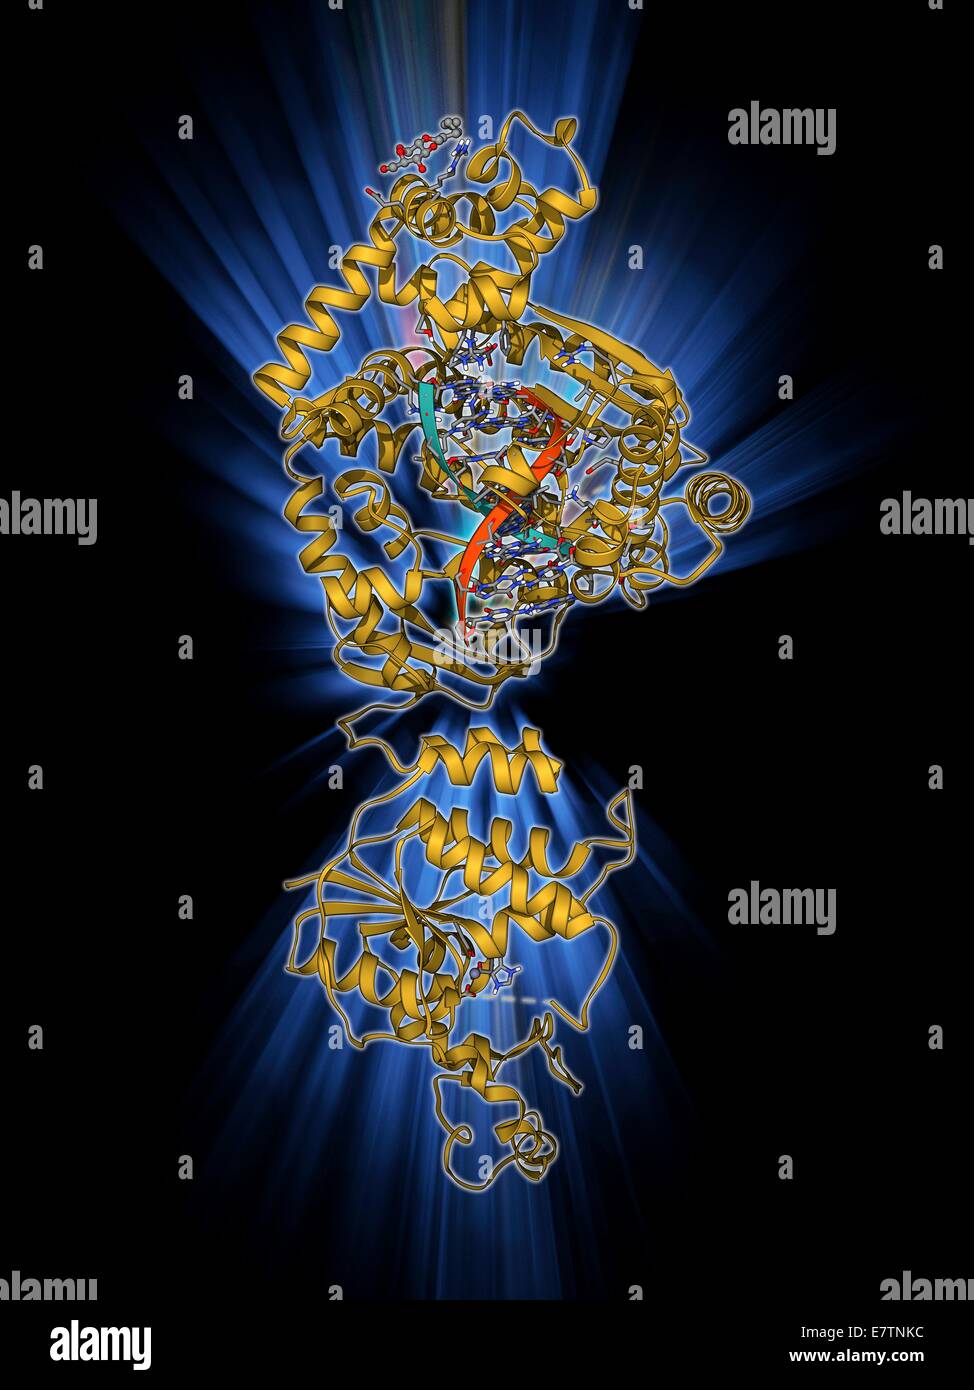 DNA-Polymerase mit DNA. Molekulares Modell des DNA-Polymerase (lila) komplexiert mit einem Molekül der DNA (Desoxyribonukleinsäure, Pink und blau). DNA-Polymerasen, sind Enzyme, die neue Stränge der DNA aus einem ergänzenden Vorlage Strang synthetisieren. Stockfoto